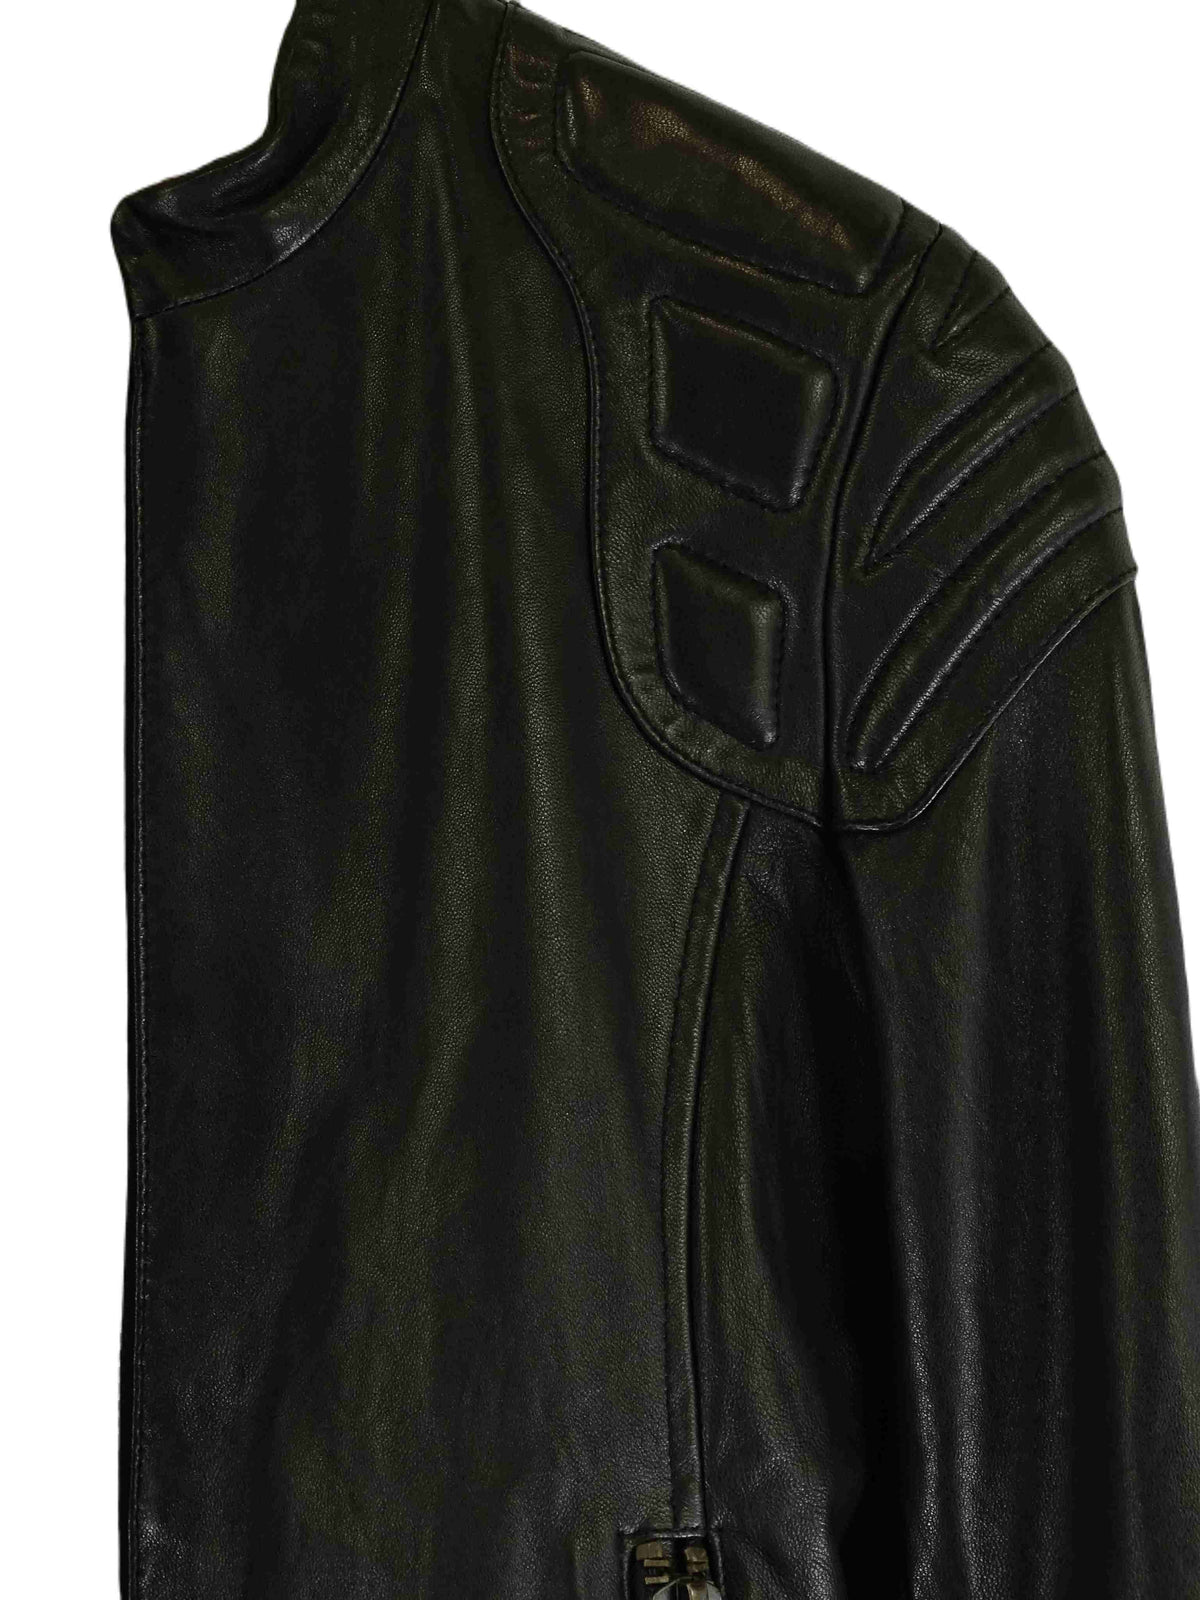 Doma Black Leather Jacket S